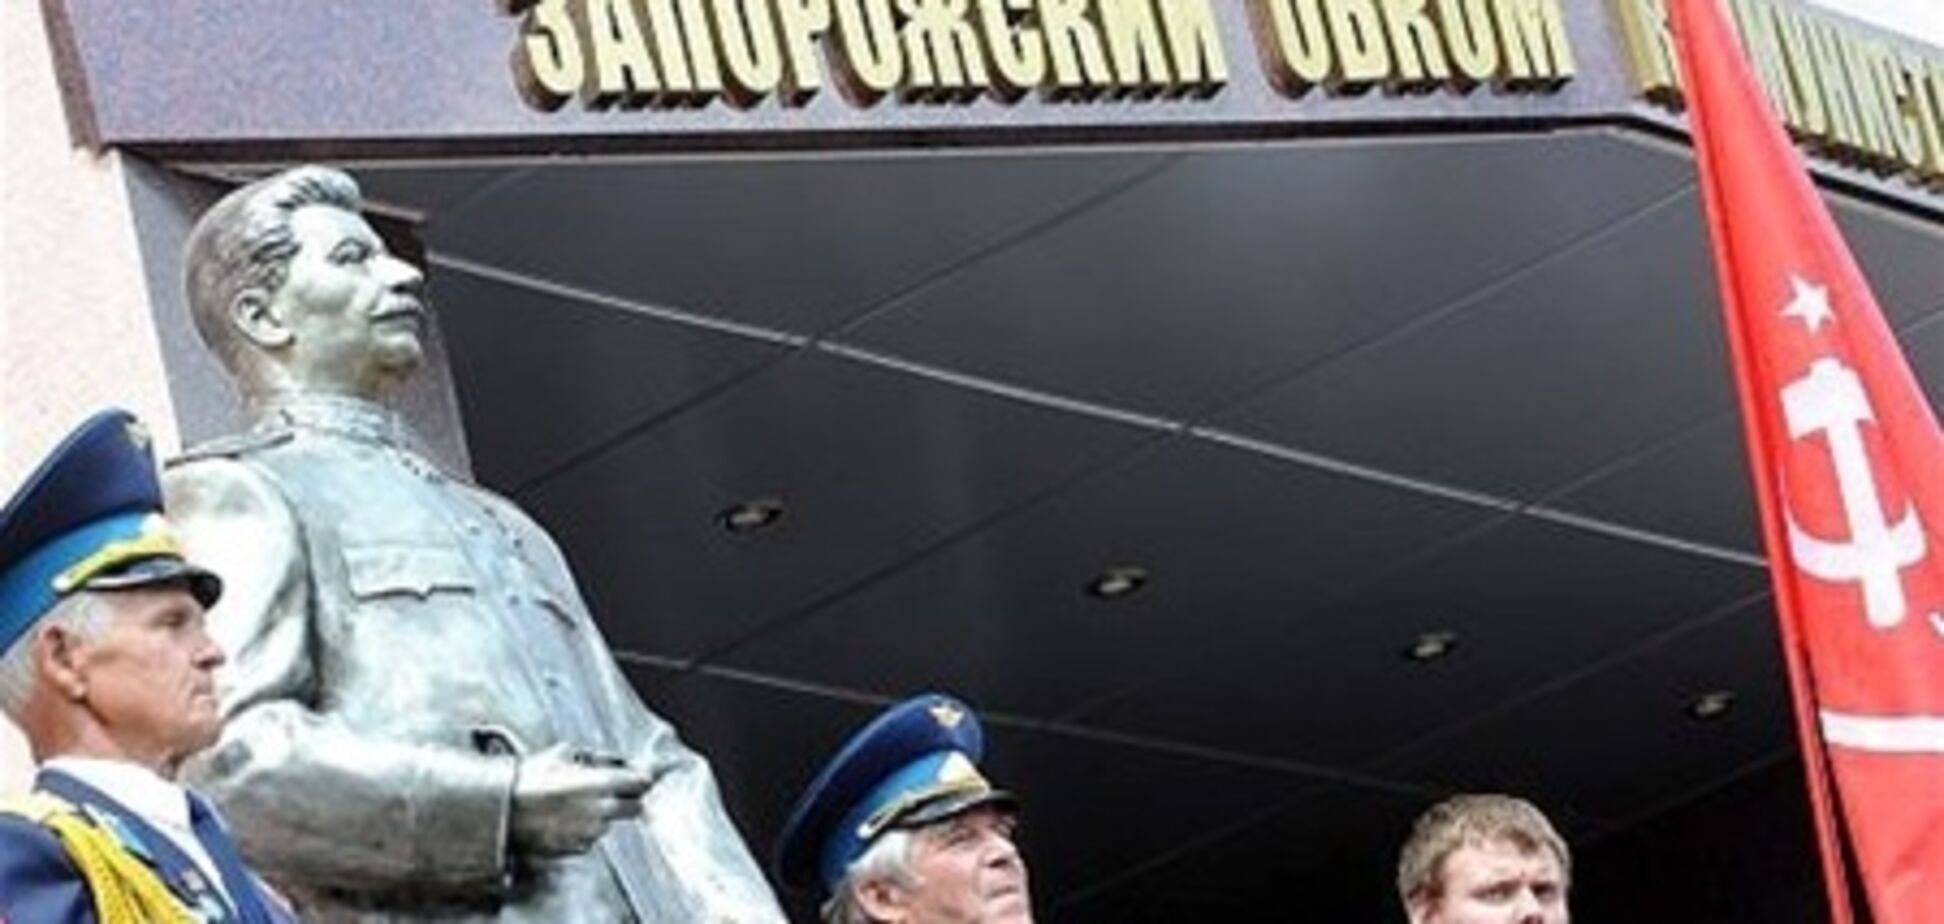 Запоріжжя. Комуністи посилено охоронятимуть новий пам'ятник Сталіну